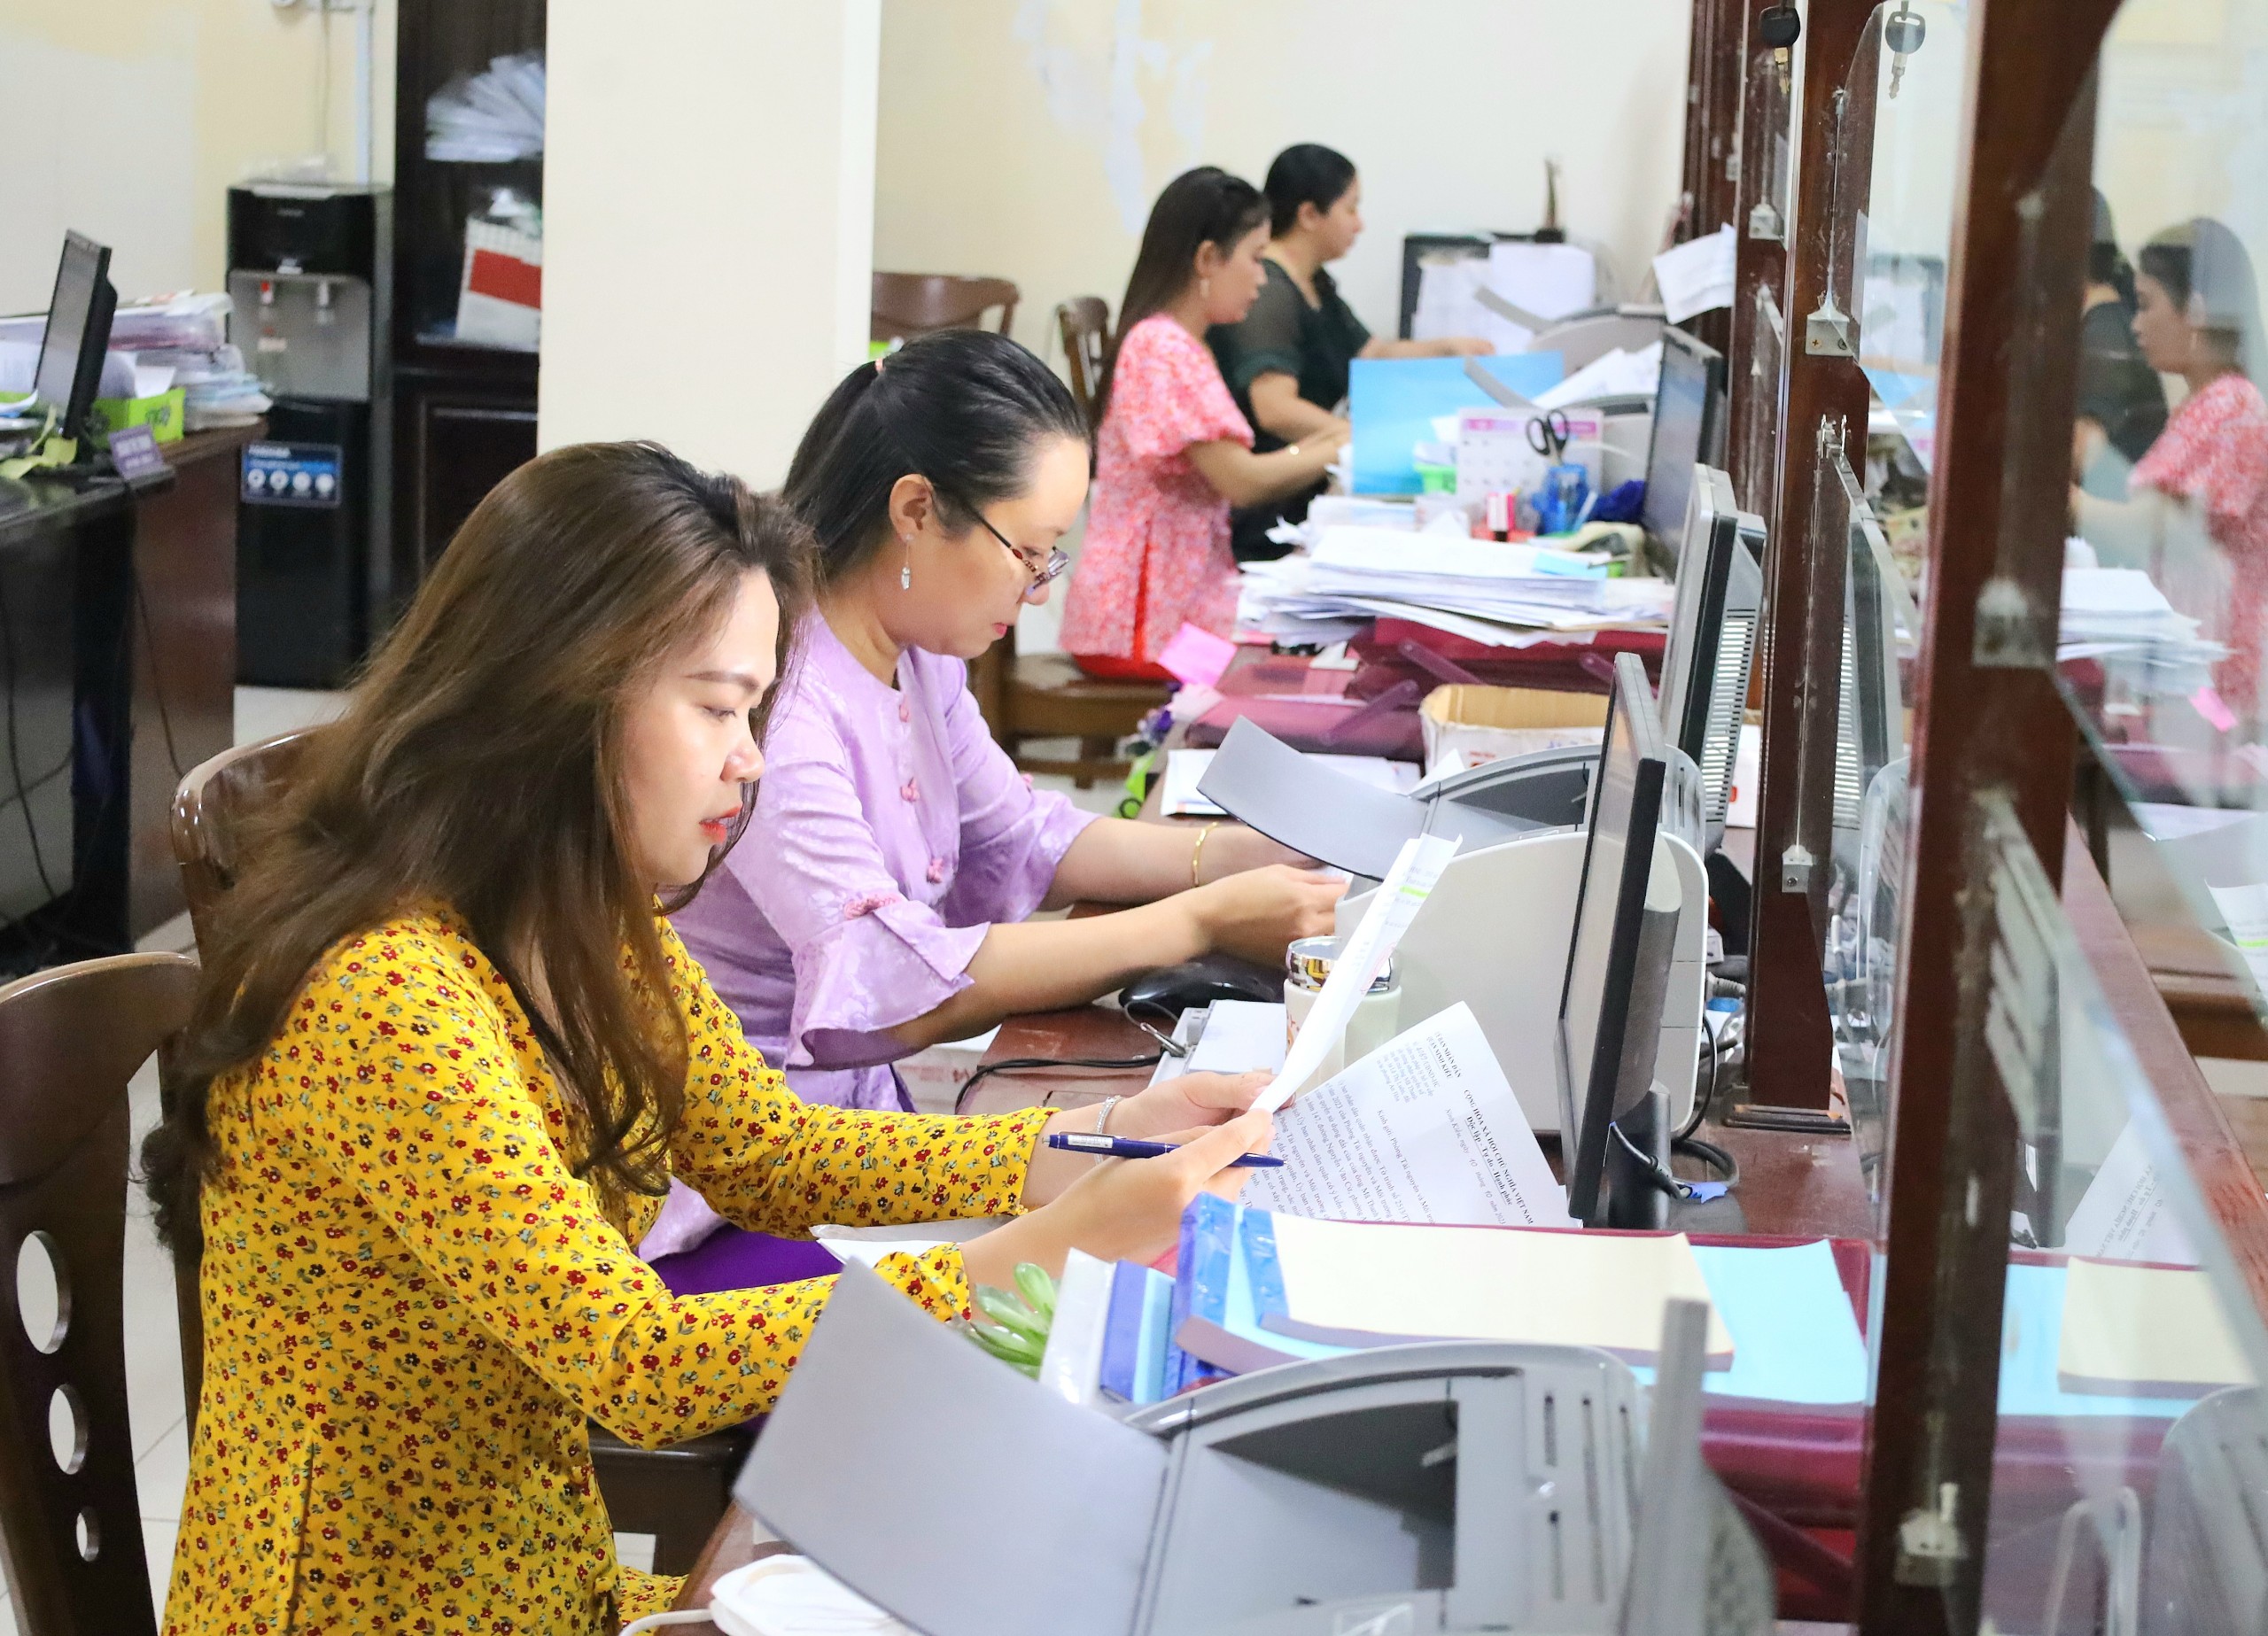 Chị em cán bộ UBND phường An Hòa, quận Ninh Kiều mặc trang phục áo bà ba vừa làm cho hình ảnh mới lạ, vừa tôn lên vẻ đẹp dịu dàng của các công chức, cán bộ nữ, vừa tạo thêm sự bình dị, gần gũi, đỡ áp lực trong công tác tiếp đón người dân nơi đây.